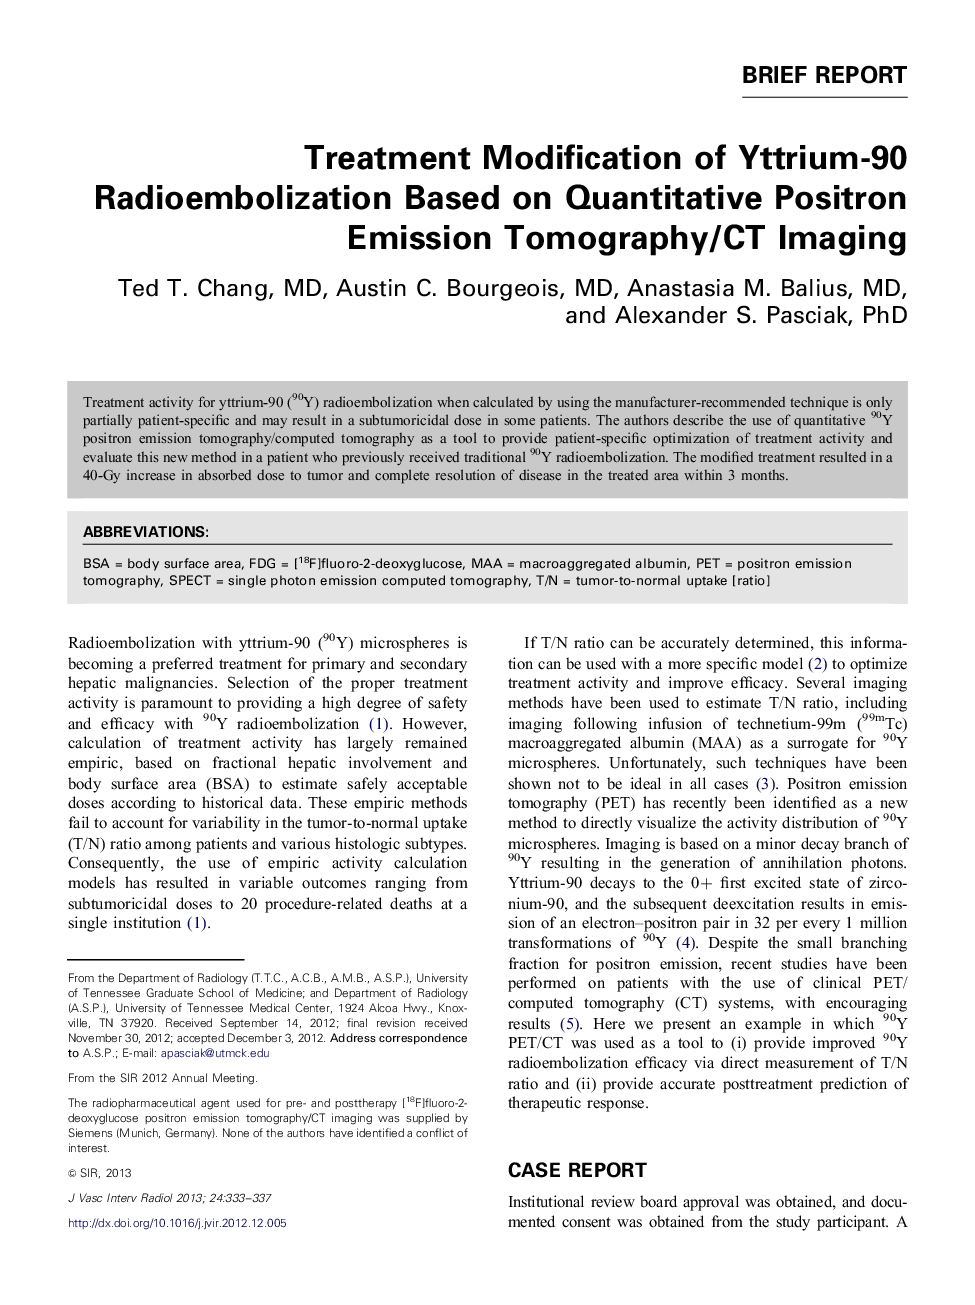 Treatment Modification of Yttrium-90 Radioembolization Based on Quantitative Positron Emission Tomography/CT Imaging